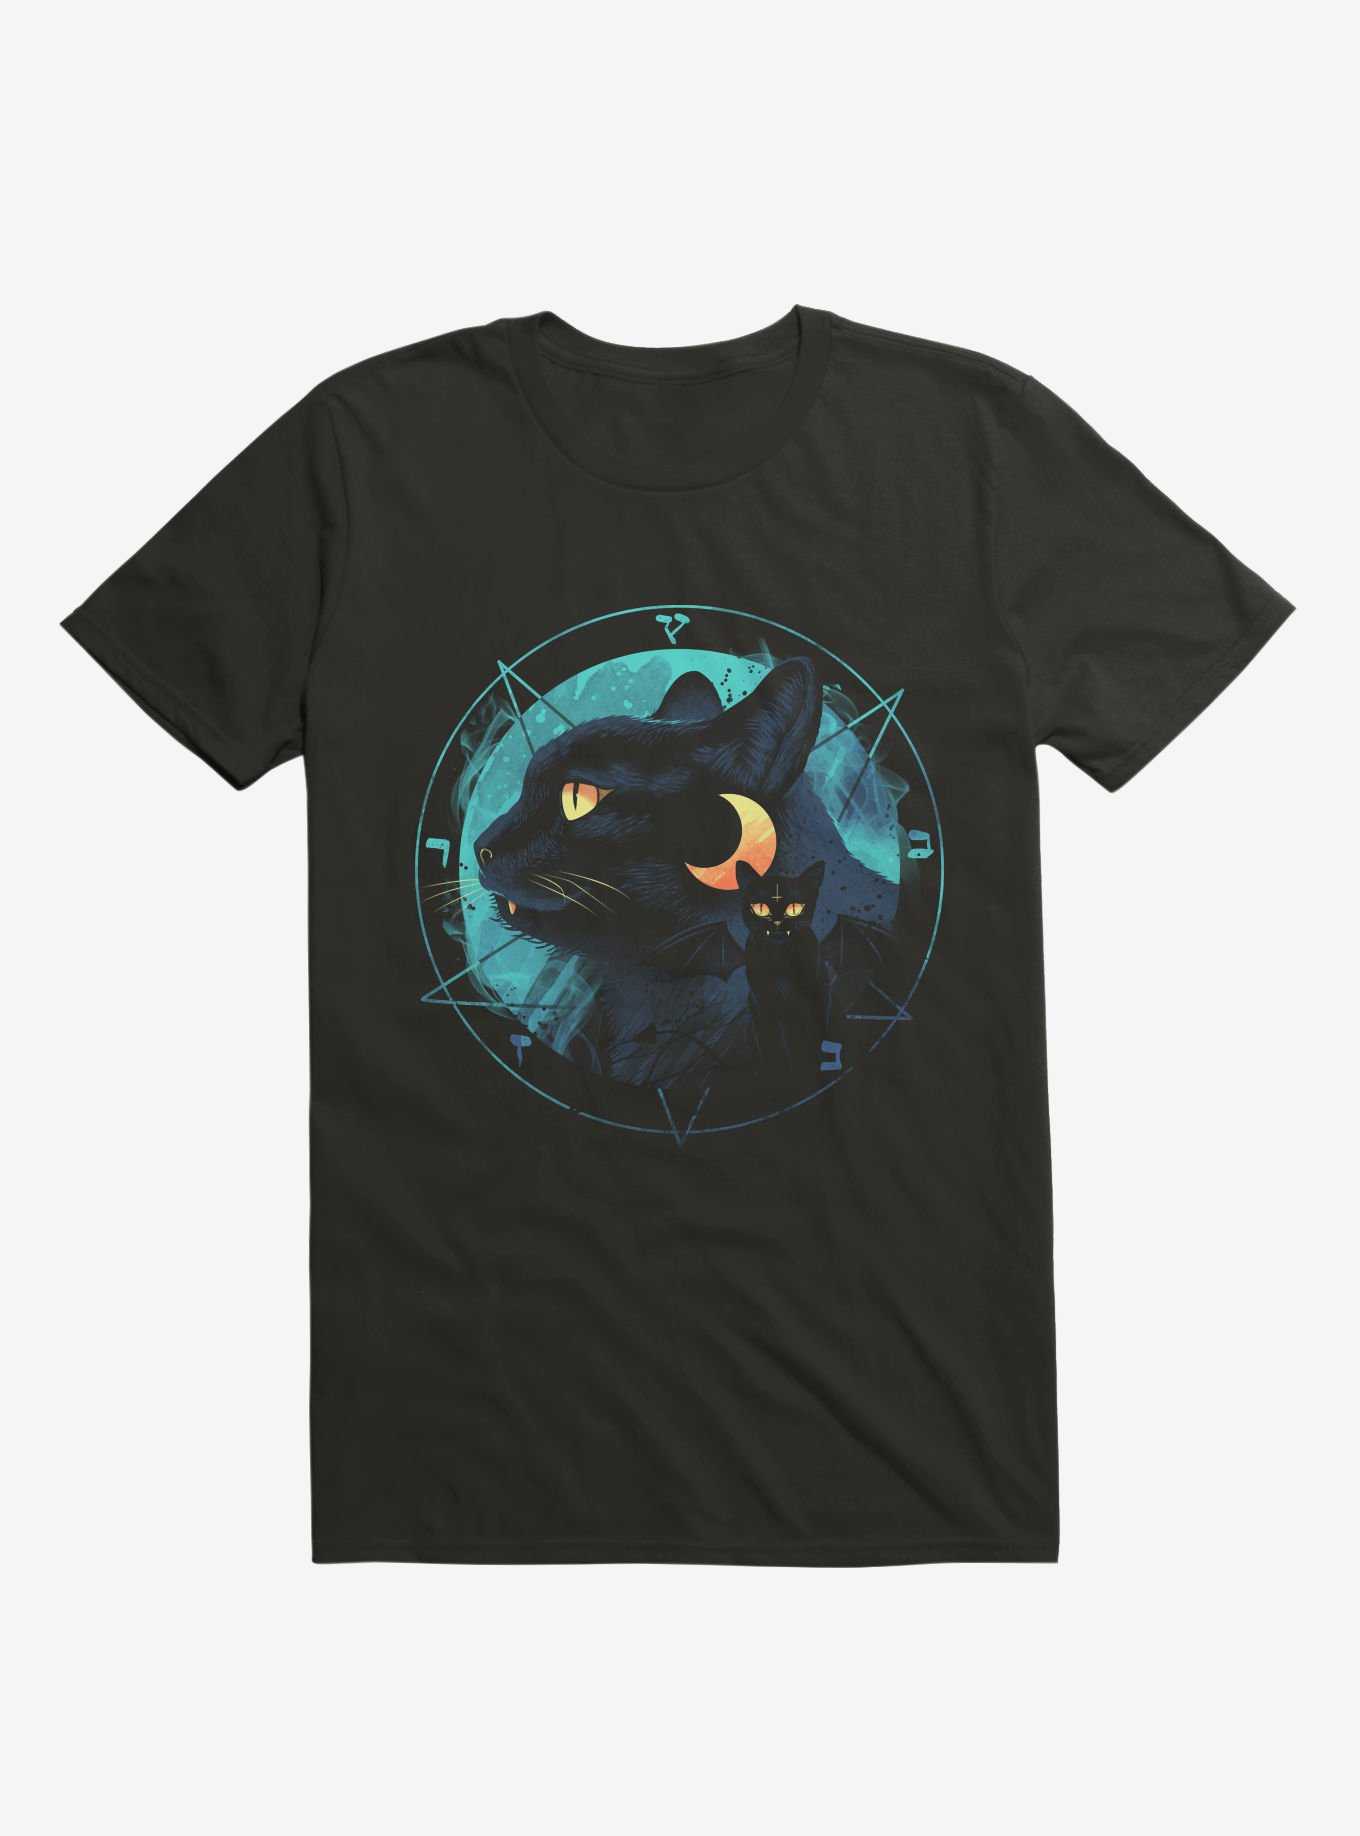 Puss the Evil Cat Black T-Shirt, , hi-res